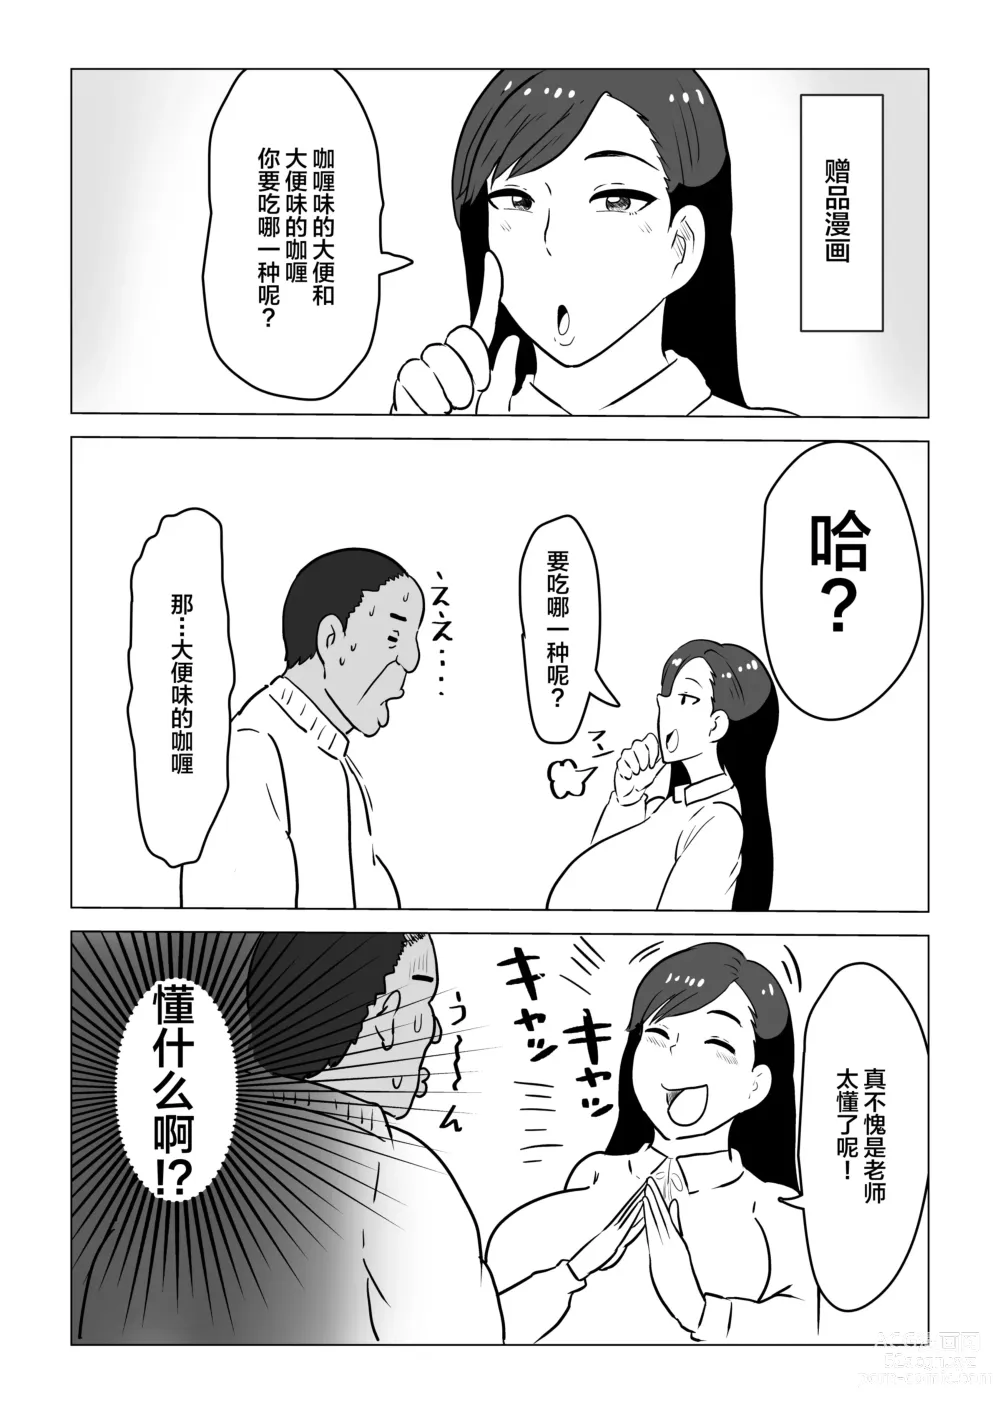 Page 47 of doujinshi Kurokami JK no Hentai